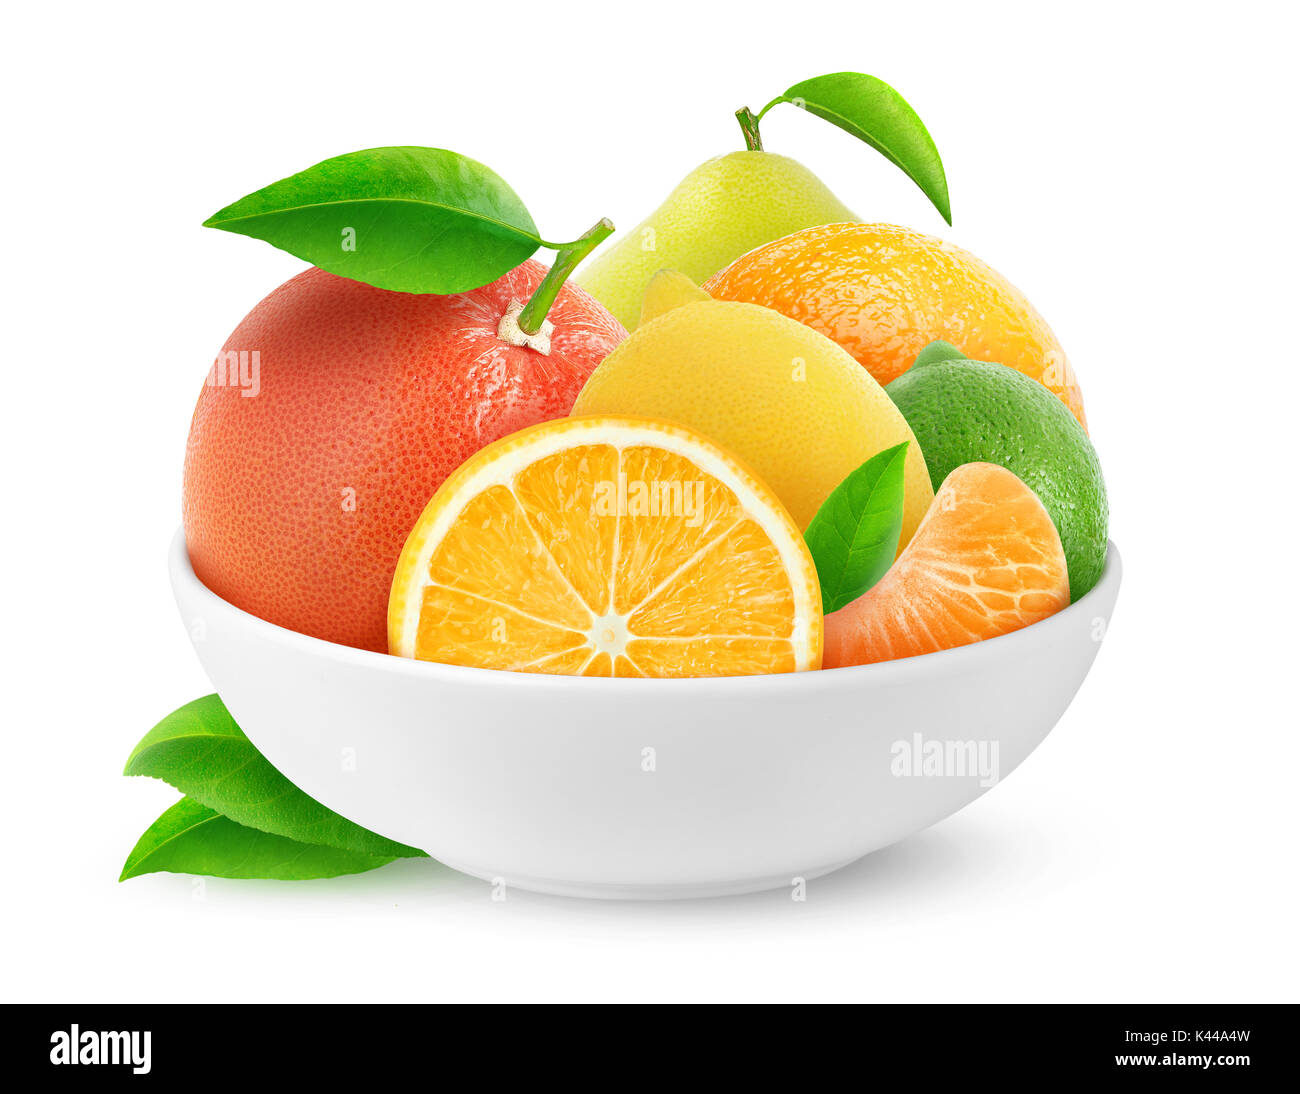 Isolierte Zitrusfrüchte. Stapel der Zitrusfrüchte (Orangen, Zitronen, Limonen, Grapefruit, Tangerine, pomelo) in Keramik Schüssel auf weißem Hintergrund mit c Stockfoto